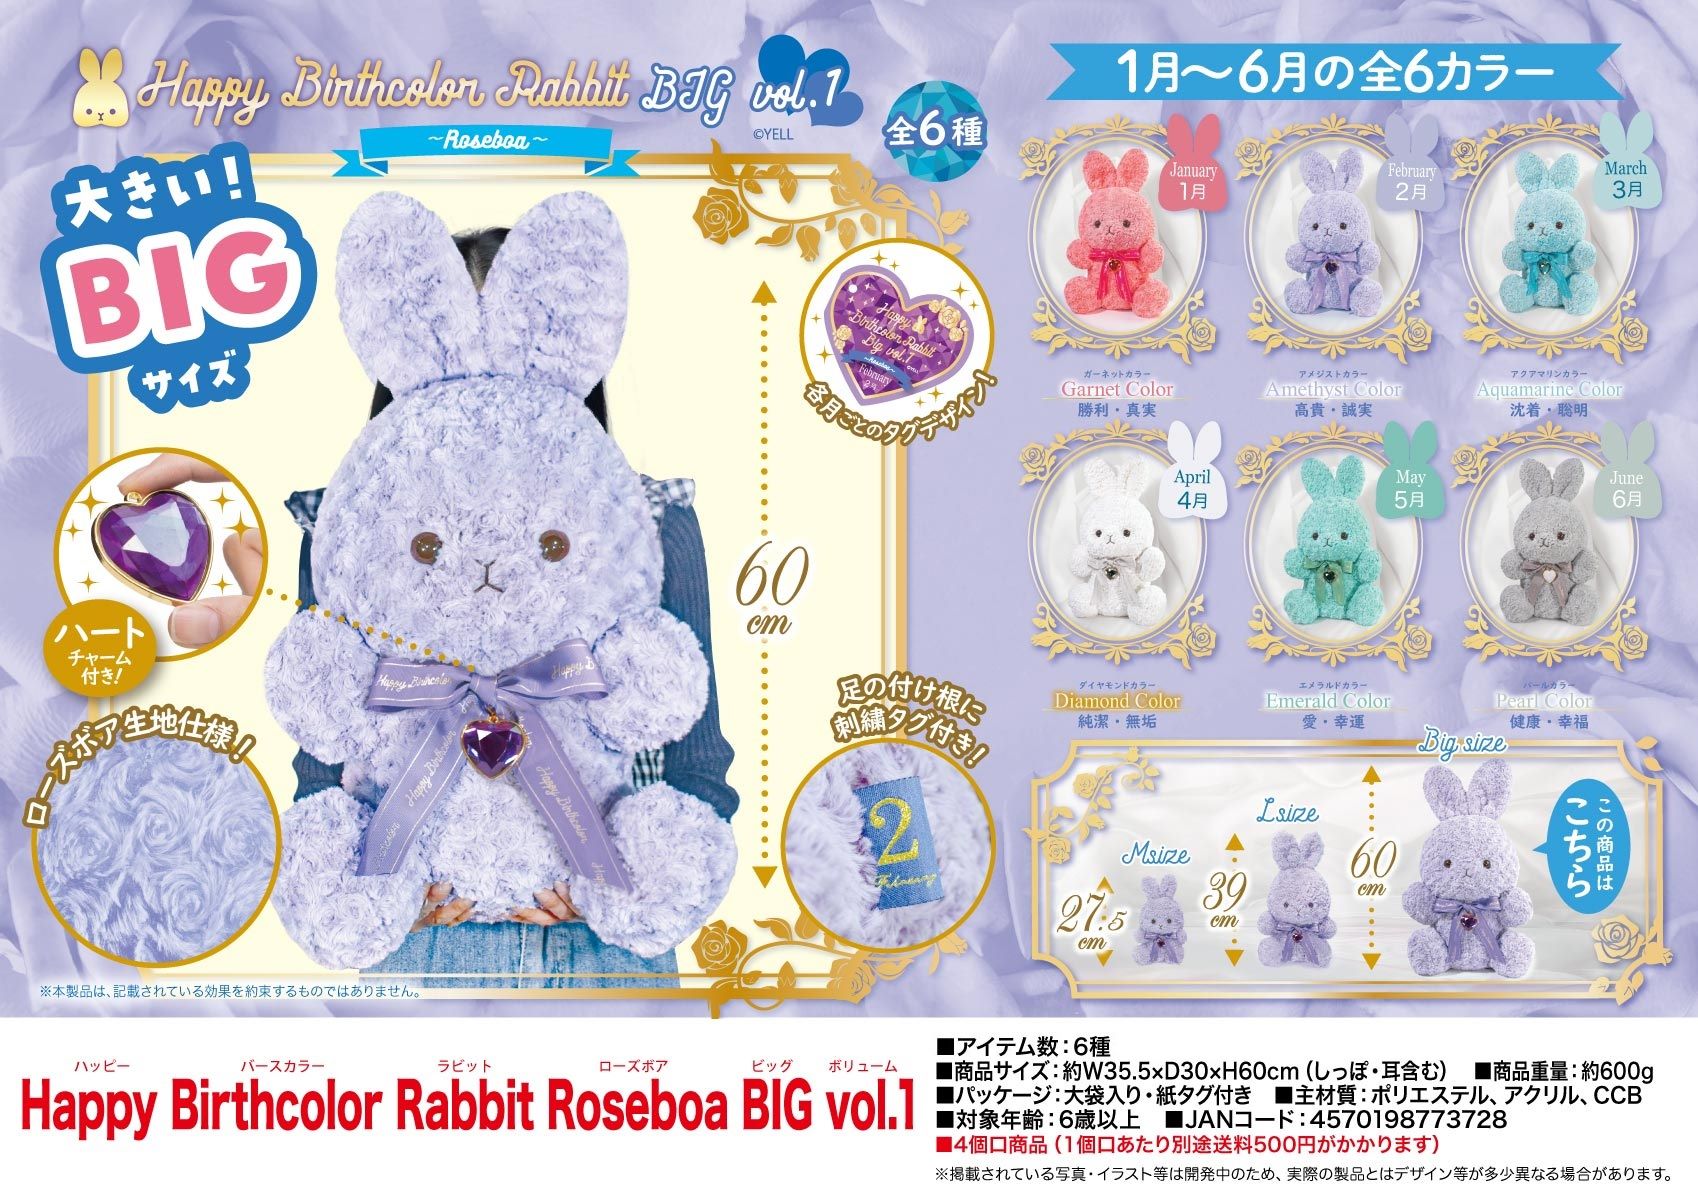 「ぬいぐるみ」Happy Birthcolor Rabbit Roseboa BIG vol.1